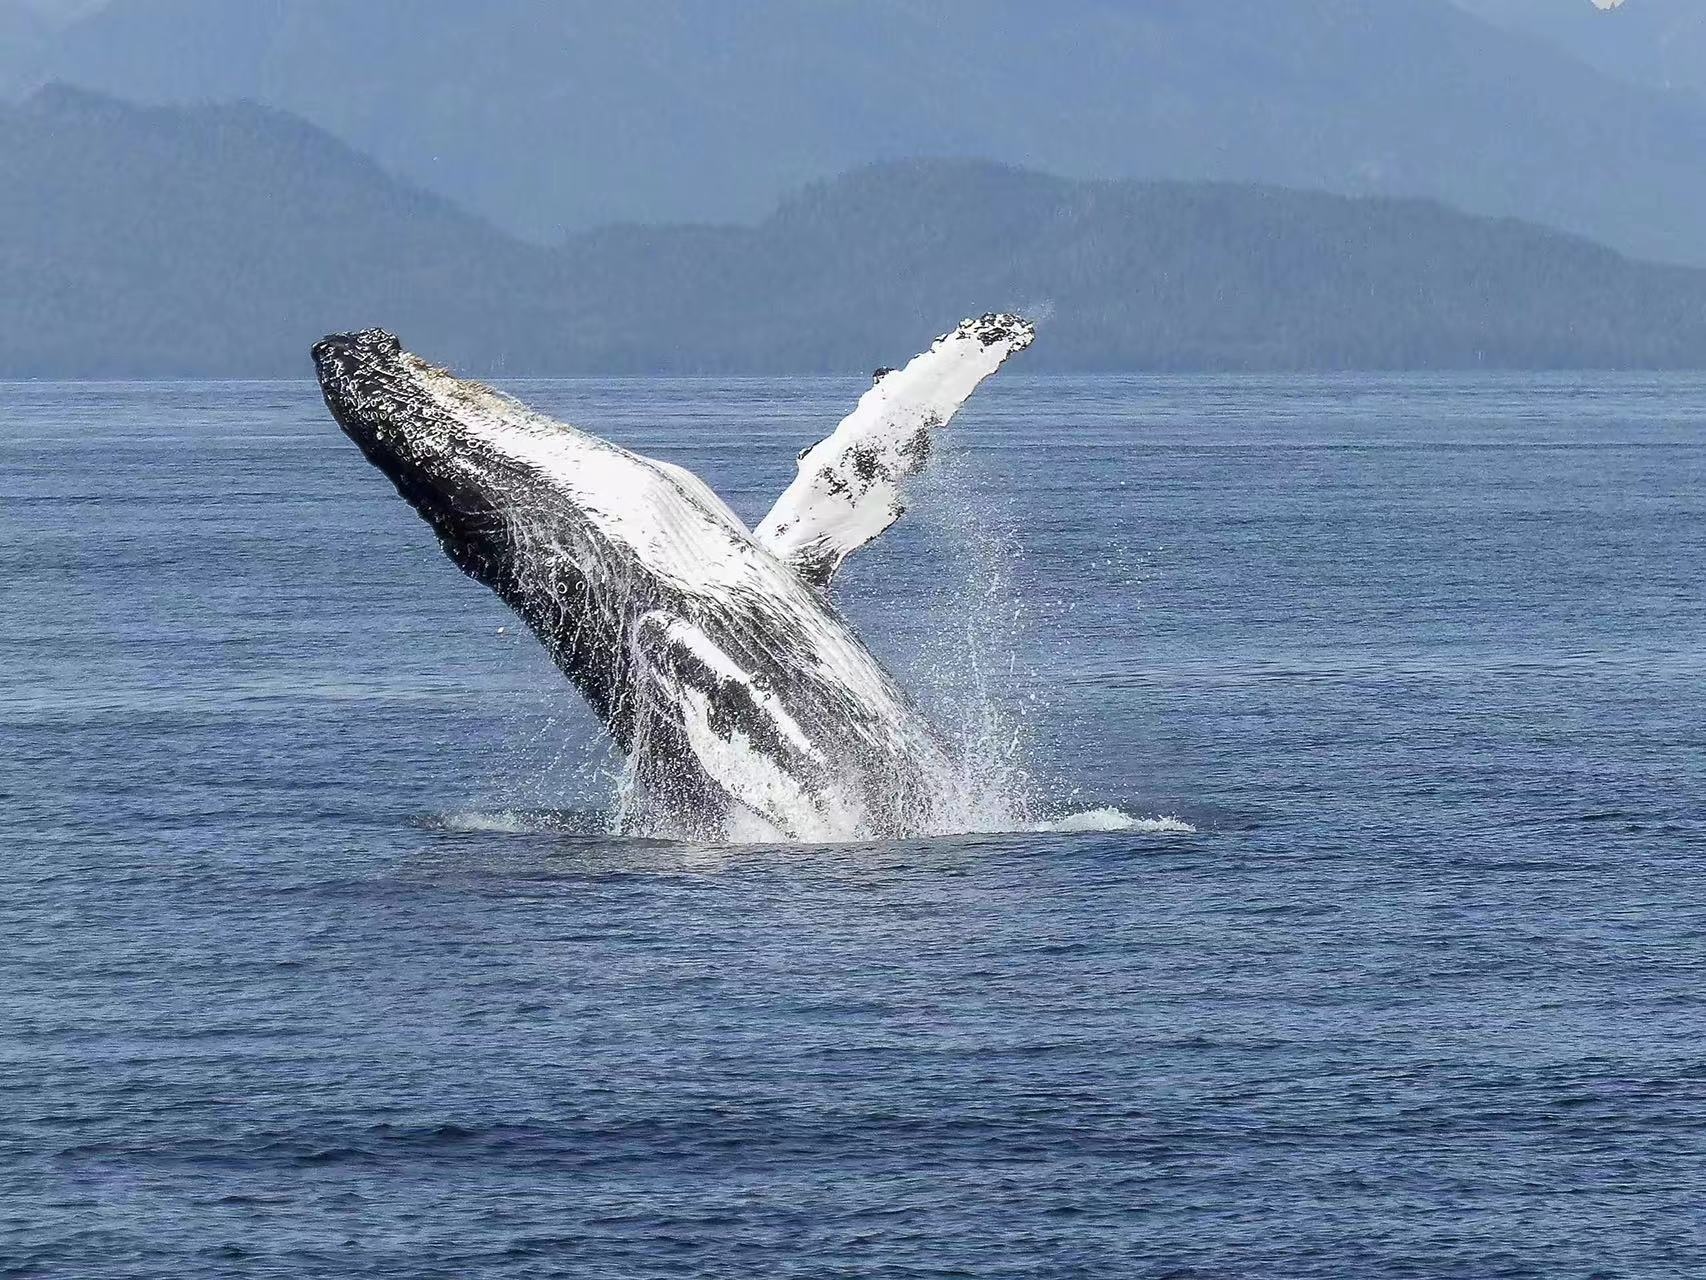 体型巨大的鲸鱼，为什么会突然跃出水面，然后再重重地摔进海里？